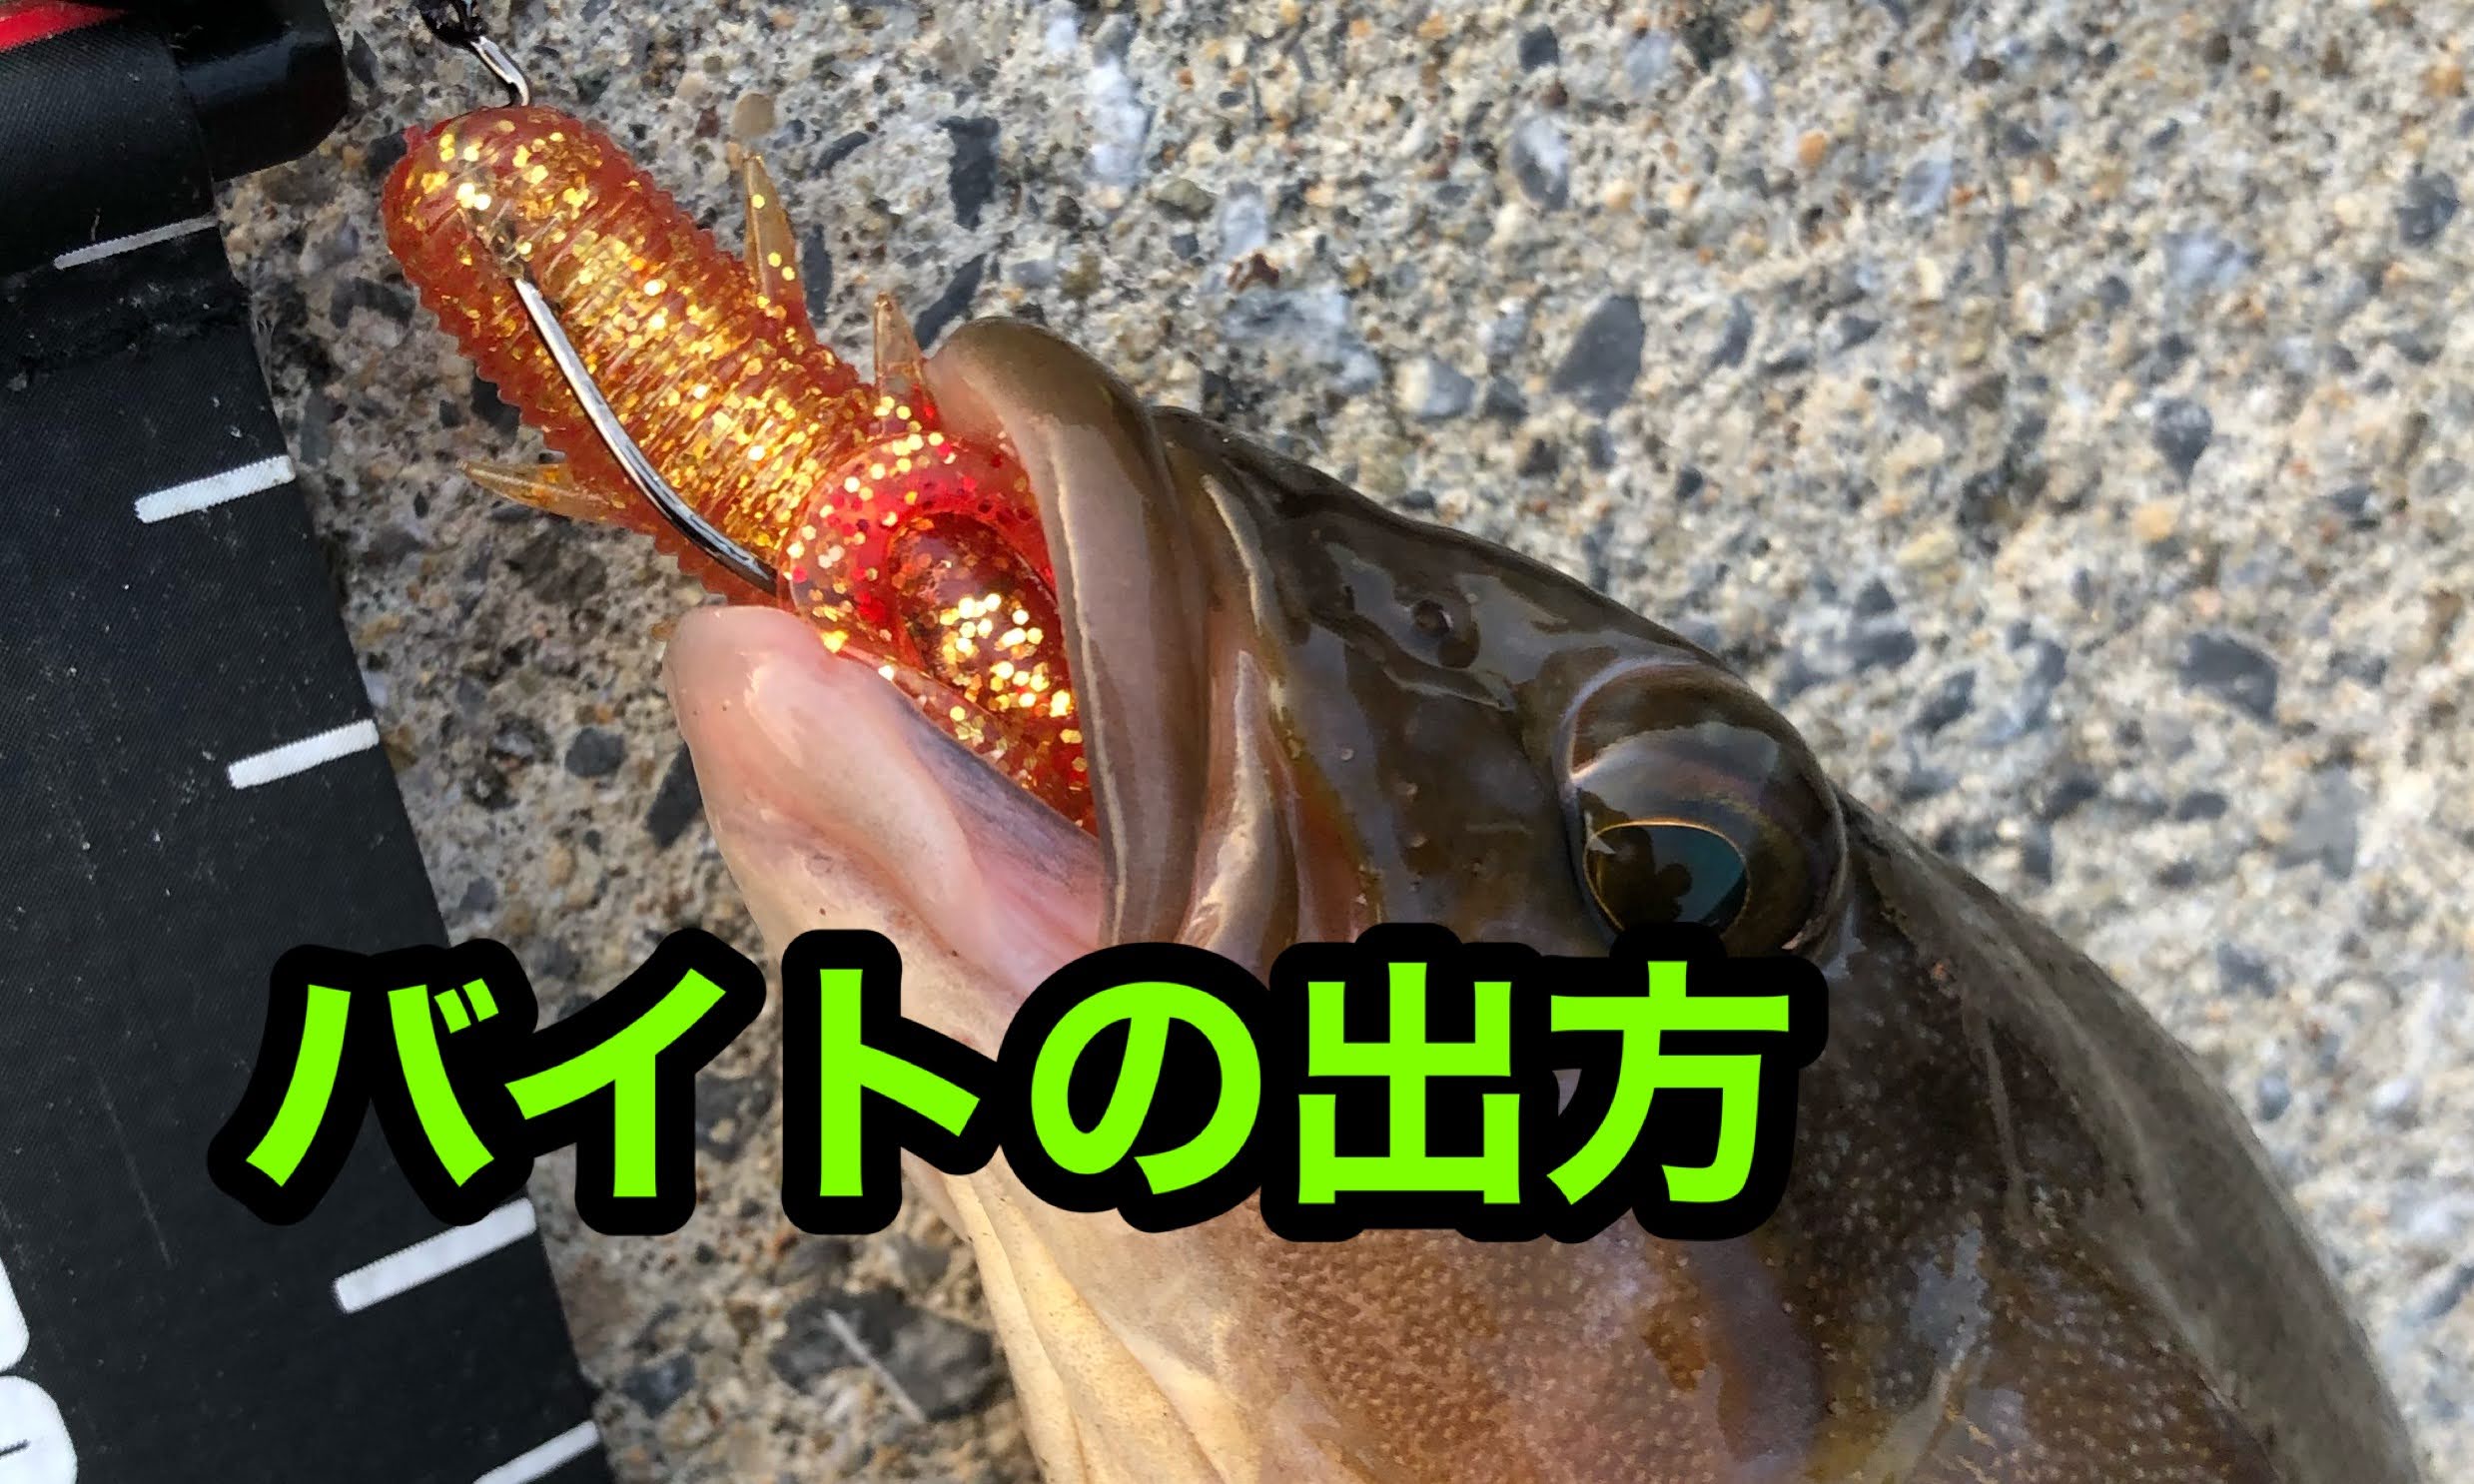 北海道 アブラコ アイナメ 釣りの当たりの出方を知ろう 釣果アップの秘訣